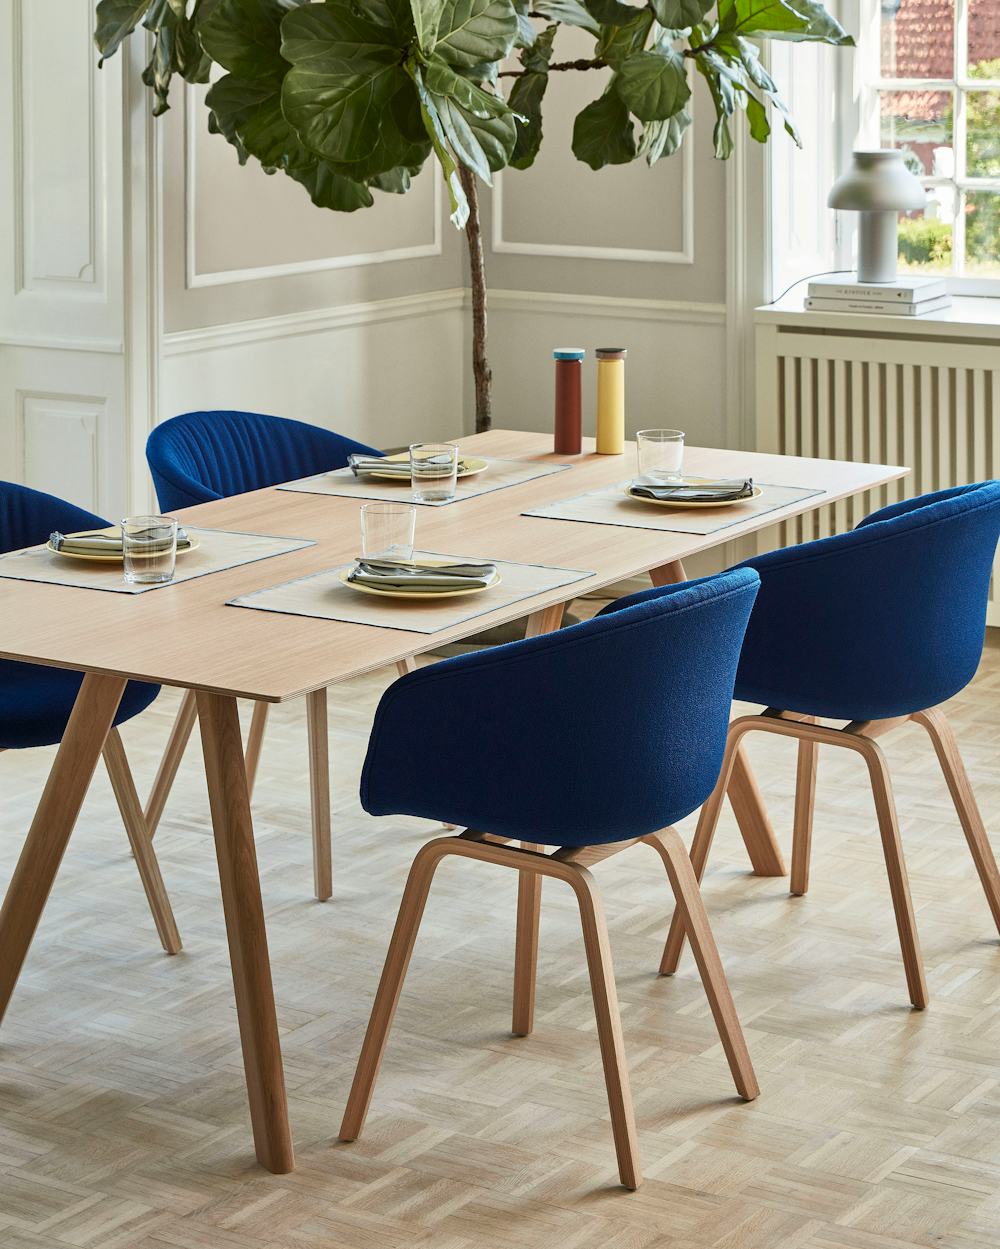 Contemporary Home Desks & Tables – HAY